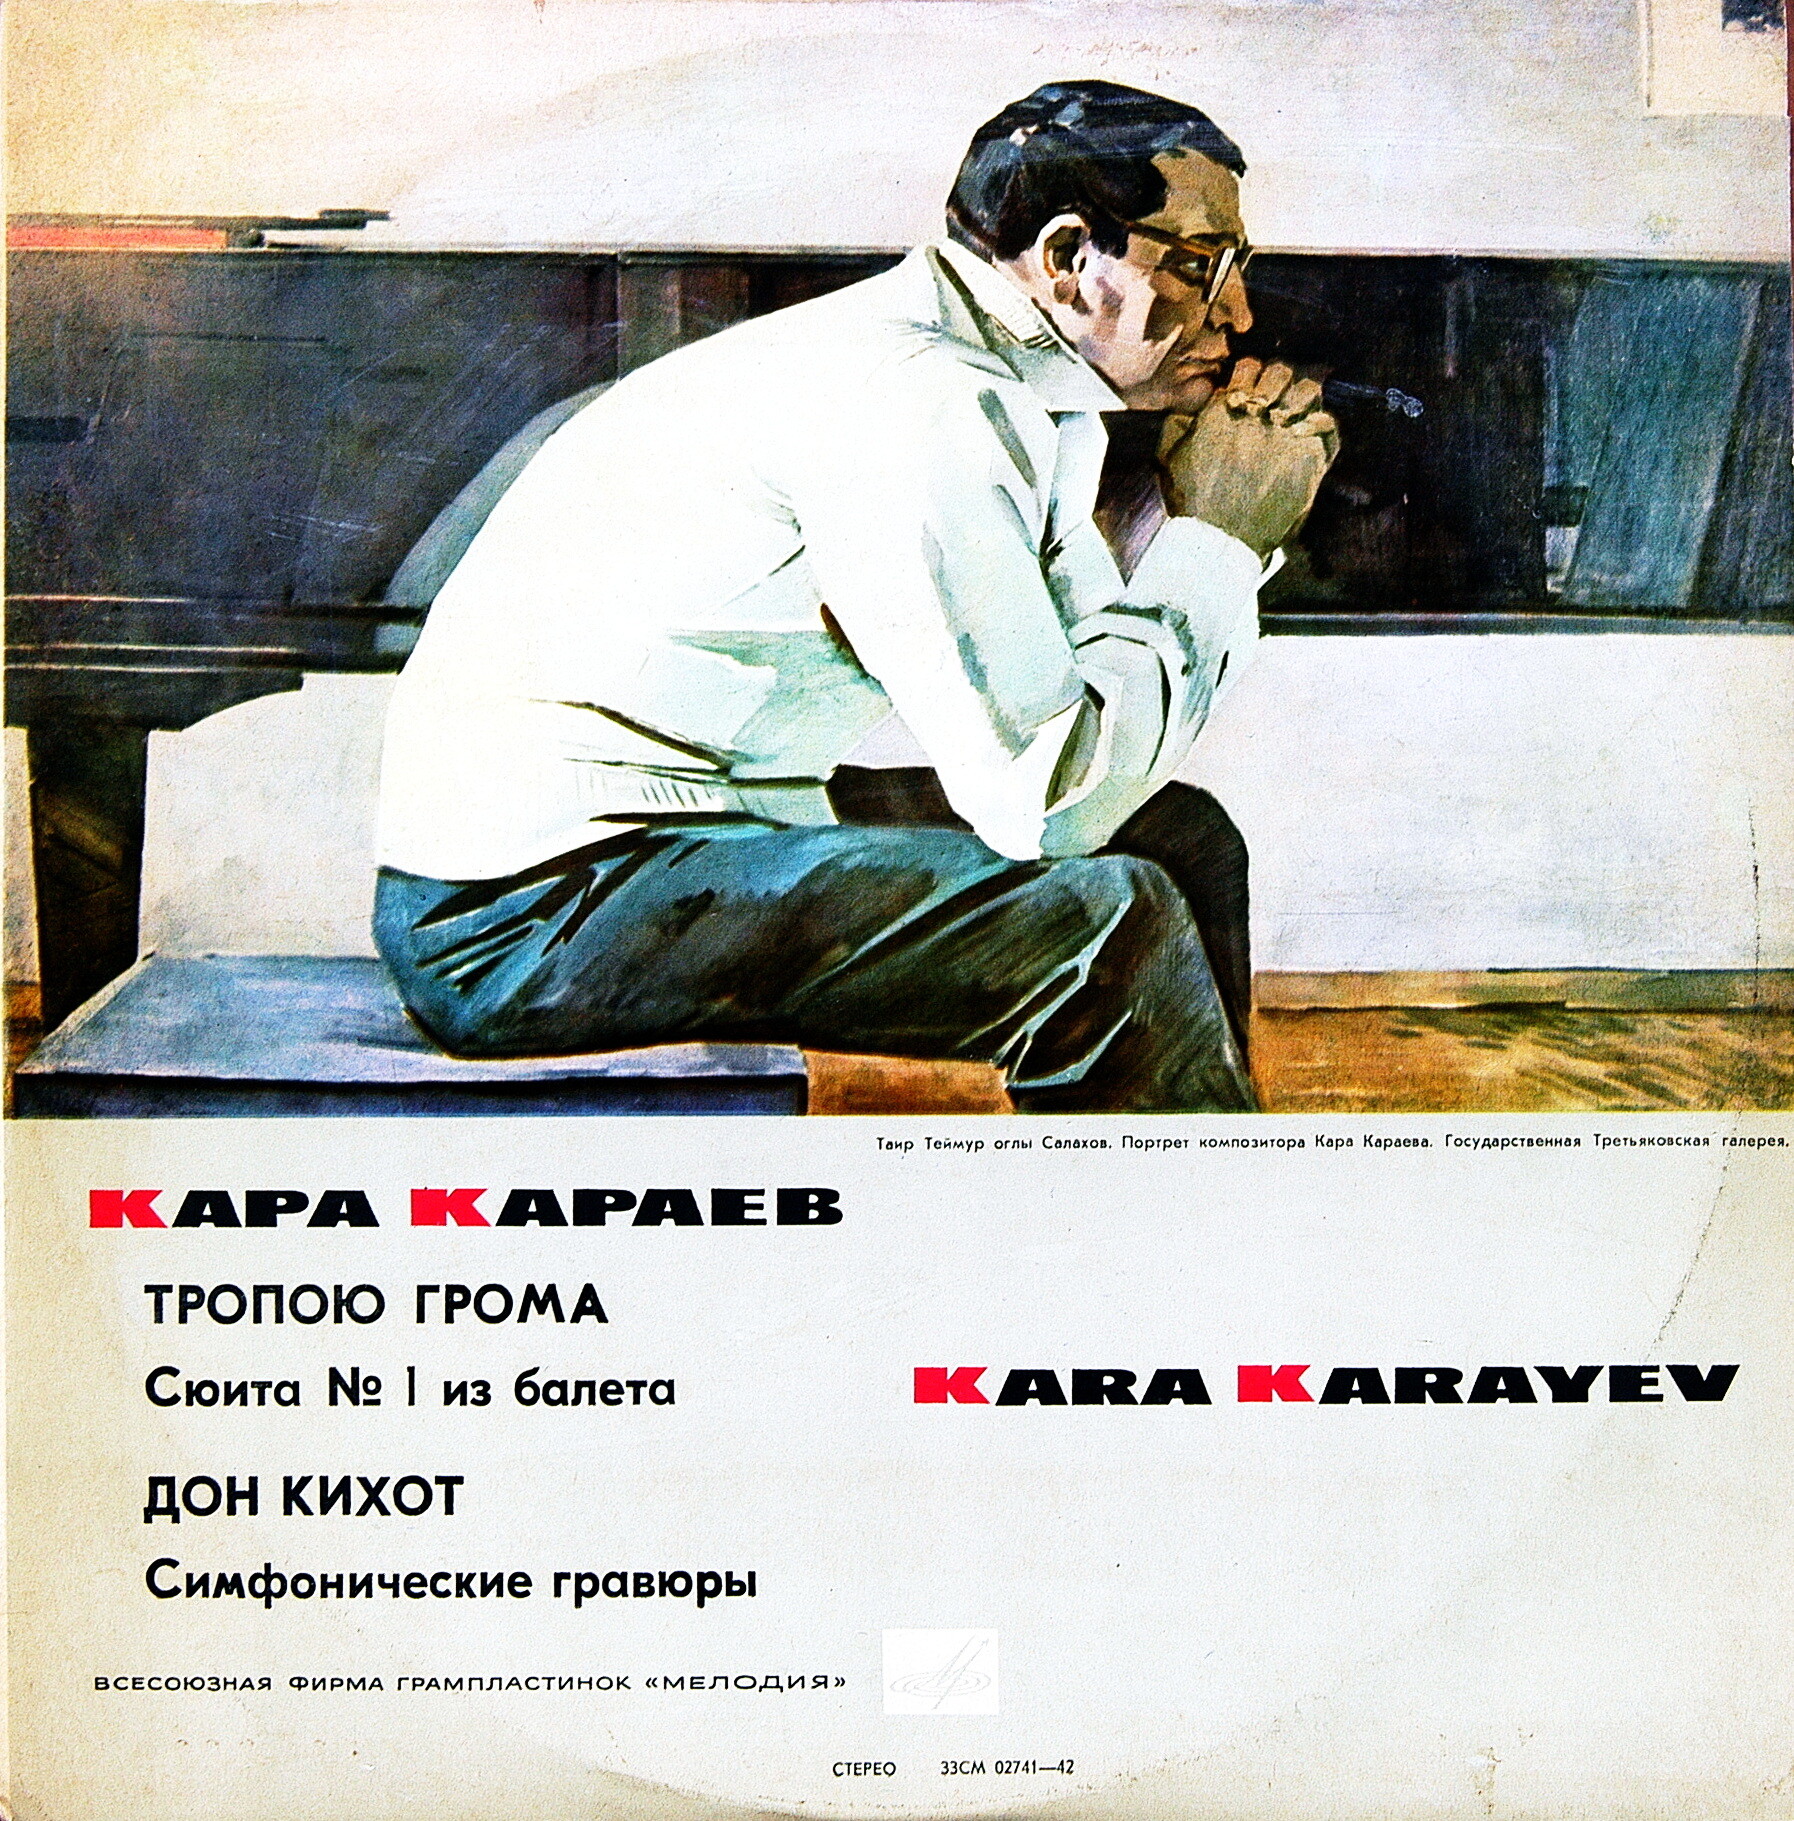 К. Караев (1918-1982) "Тропою грома", "Дон Кихот". Оркестр ГАБТ, Е. Светланов; ГСО А. Гаук